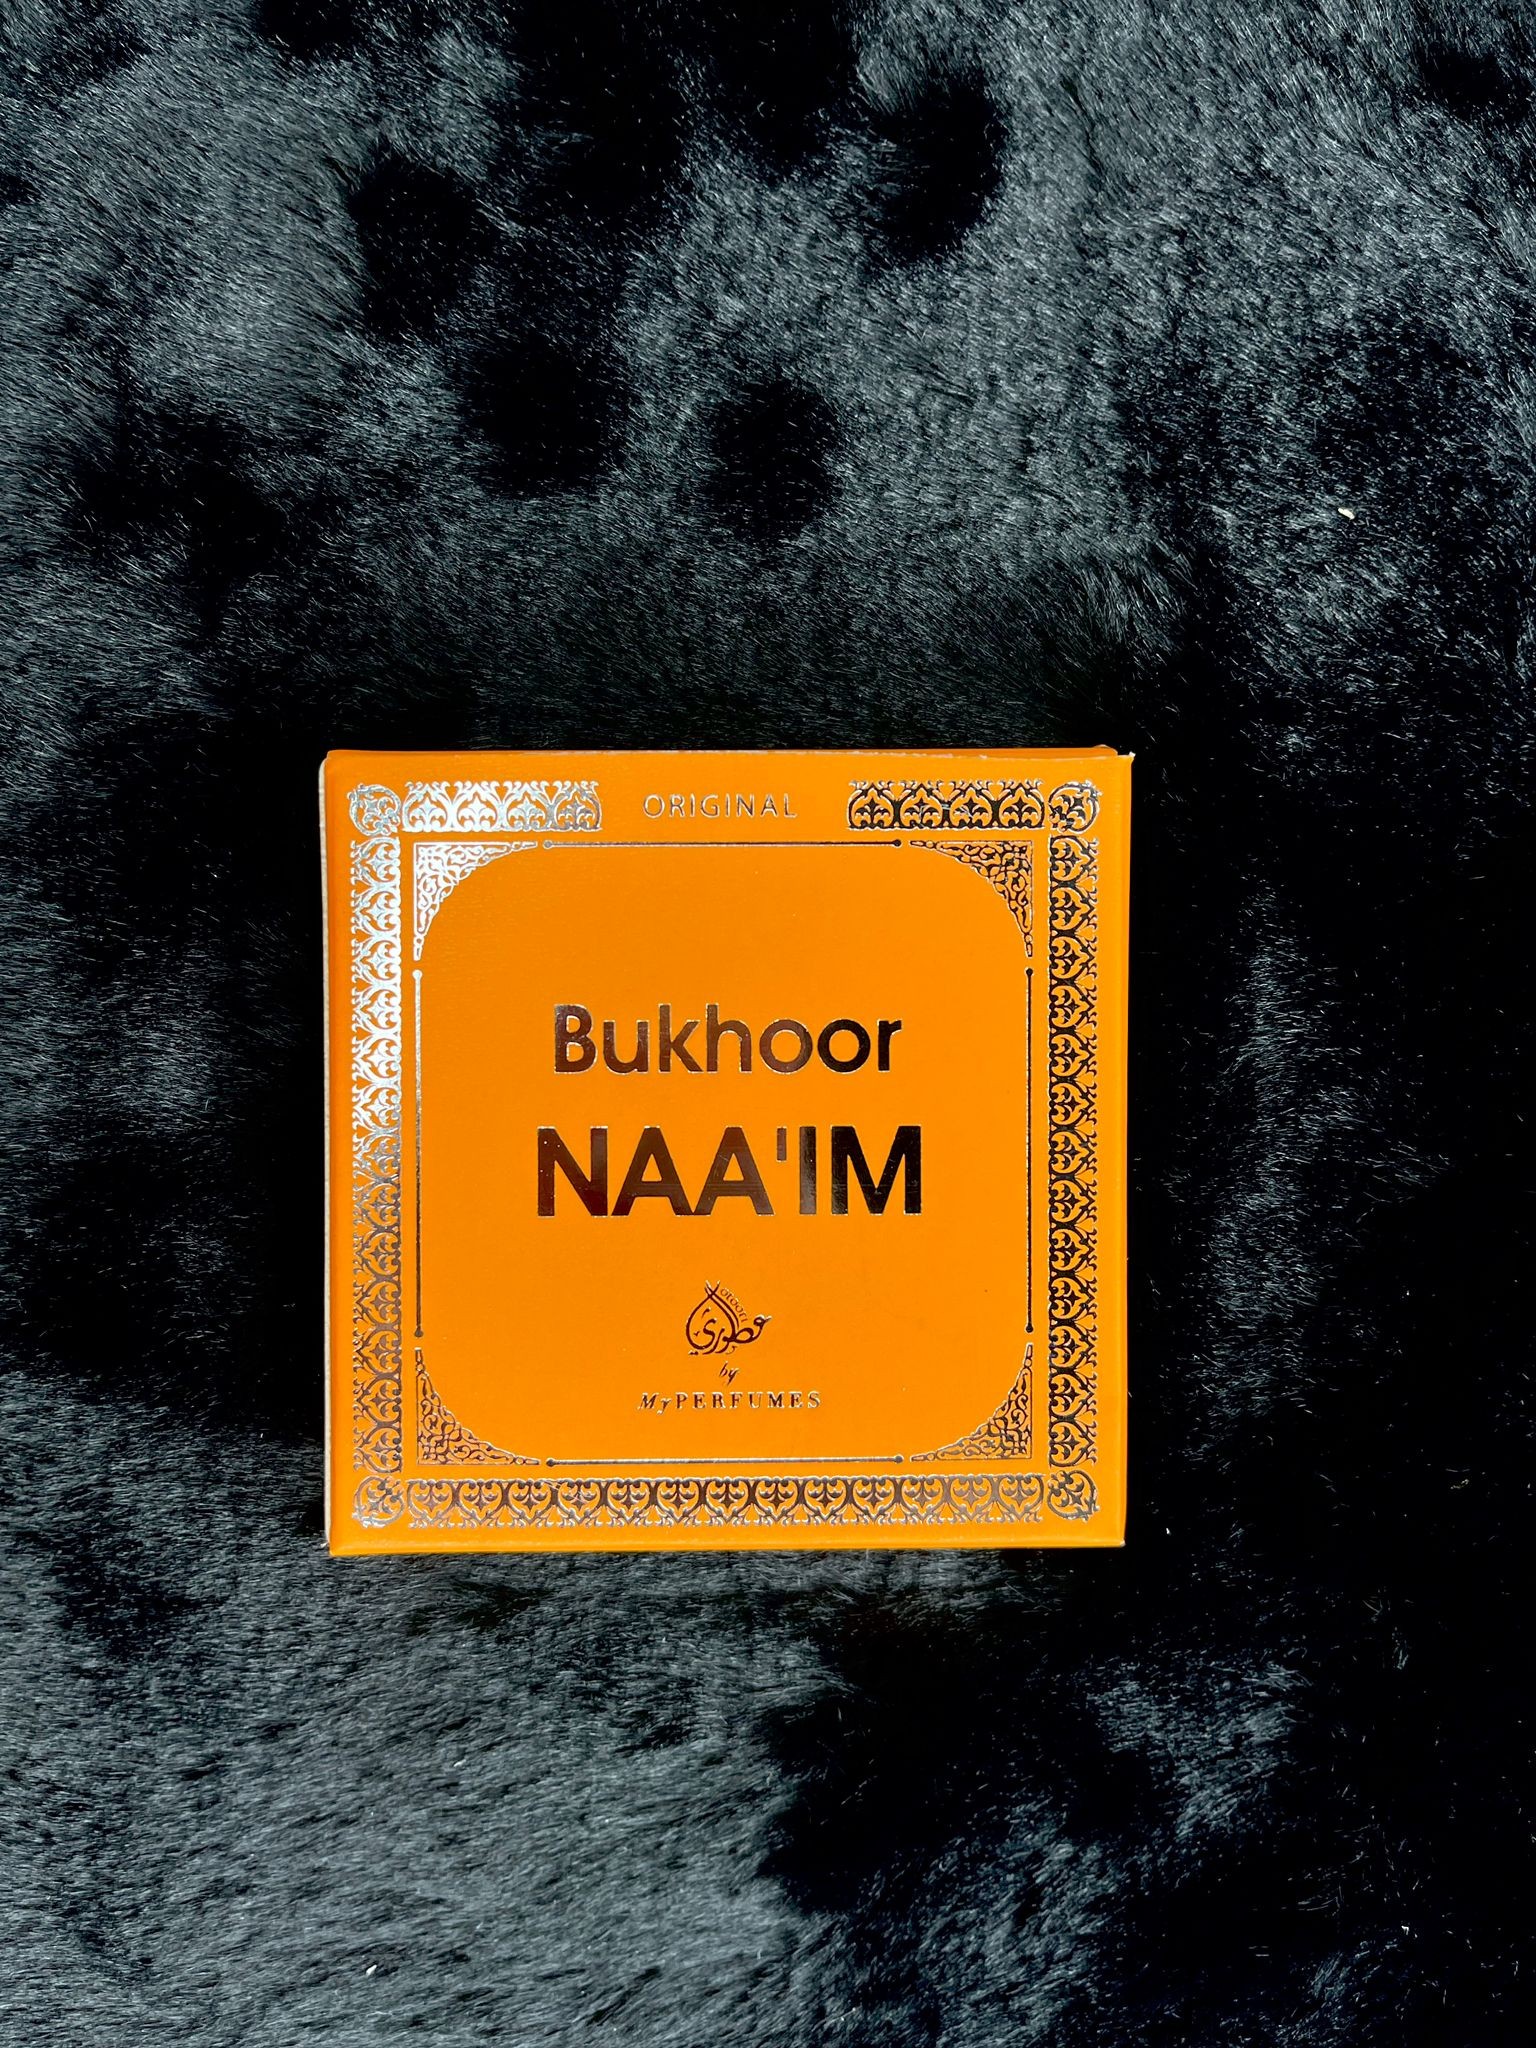 Bukhoor naa'im 40g